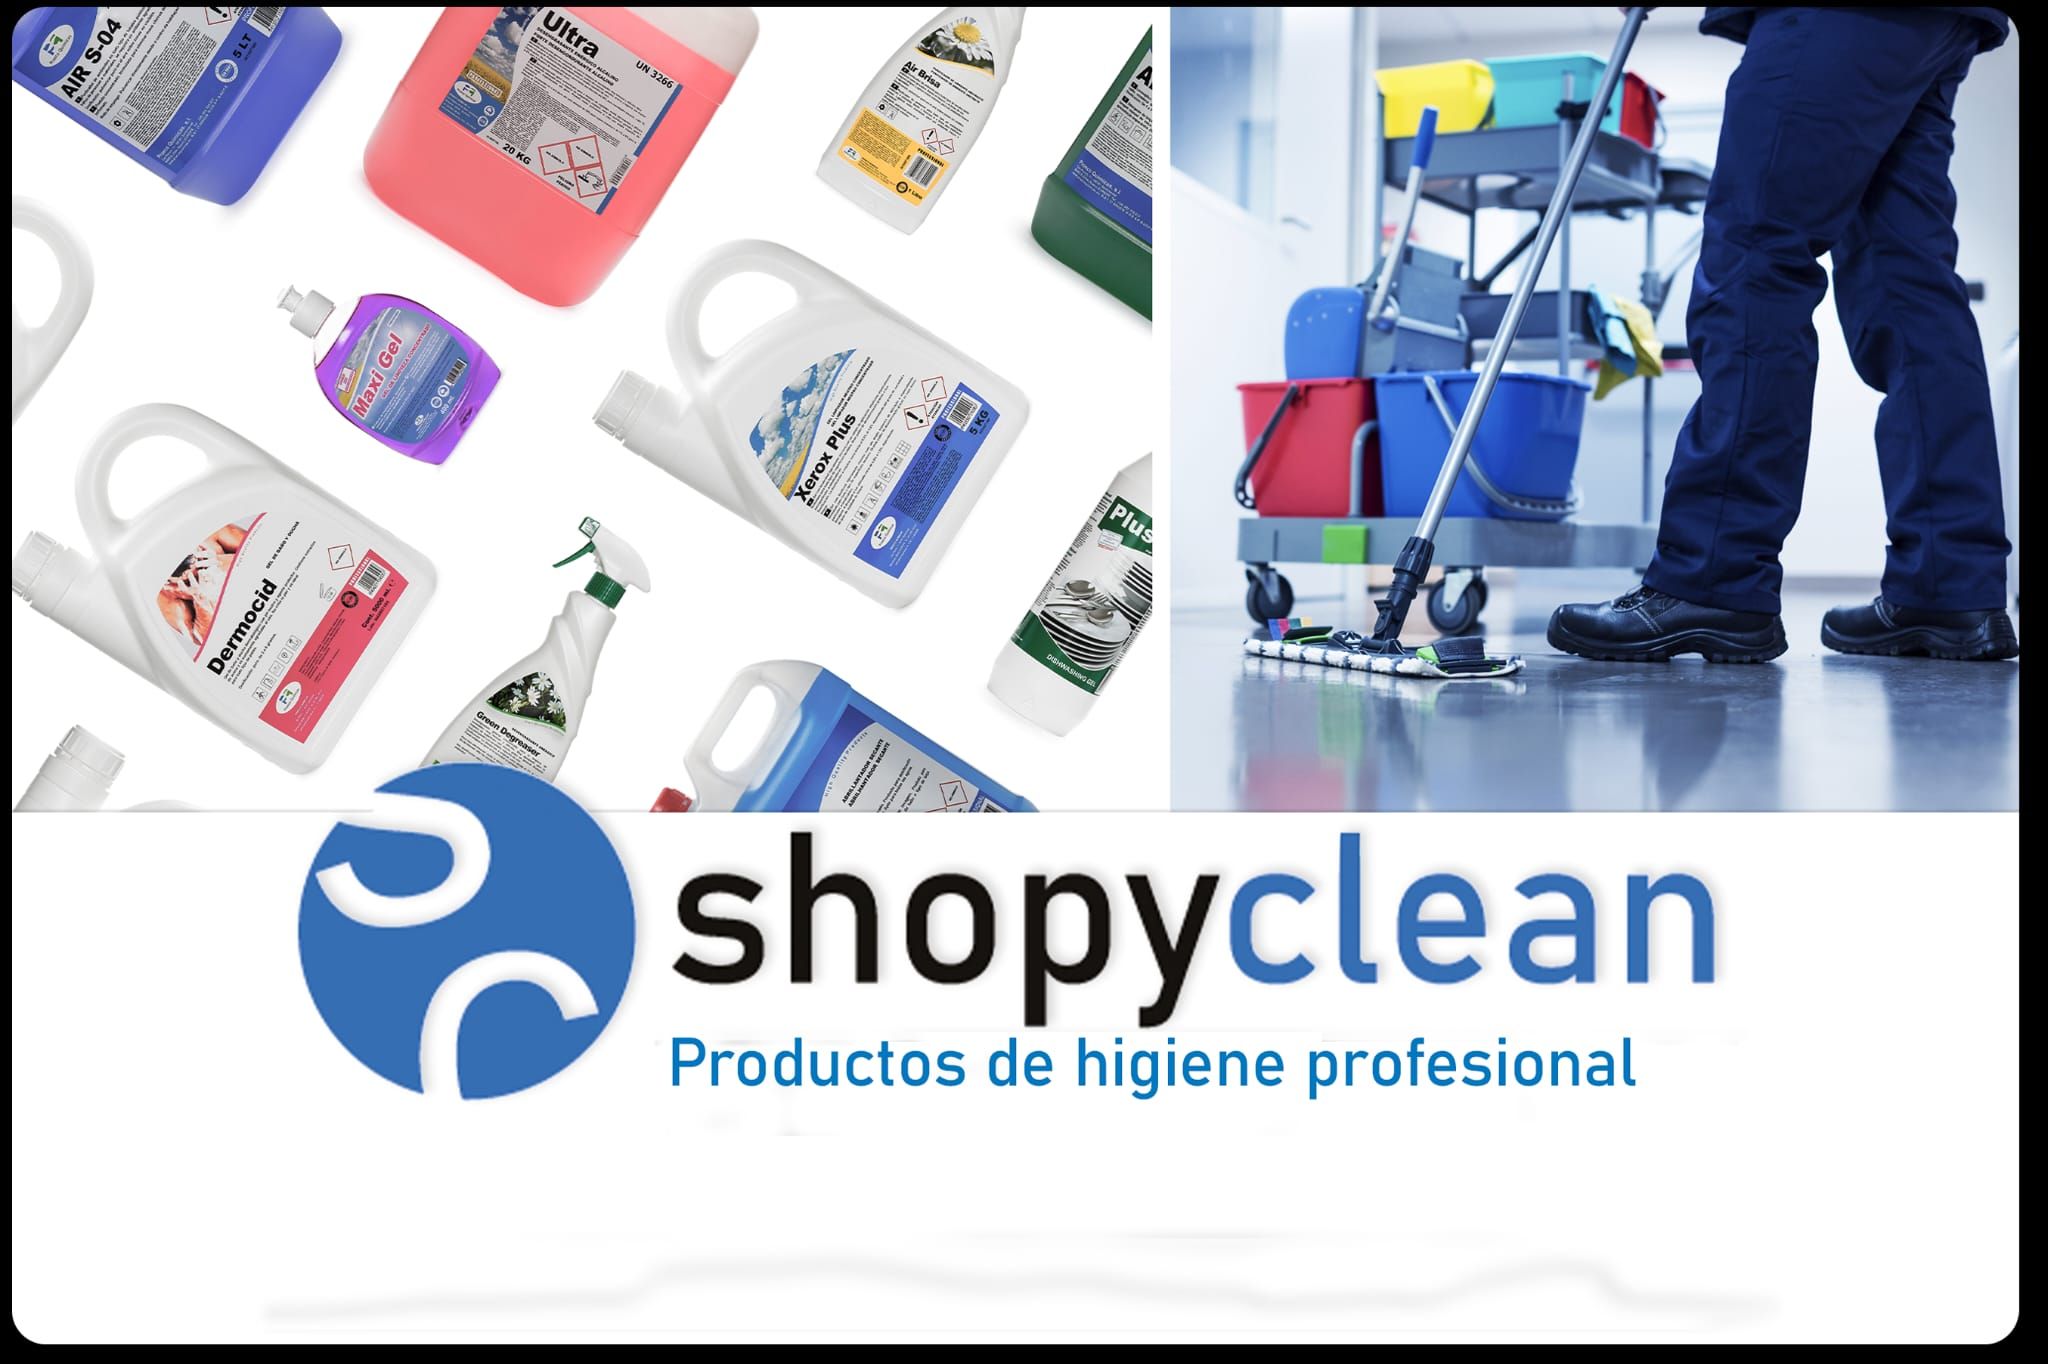 Shopyclean Europe lanza su nueva plataforma online especializada en higiene profesional